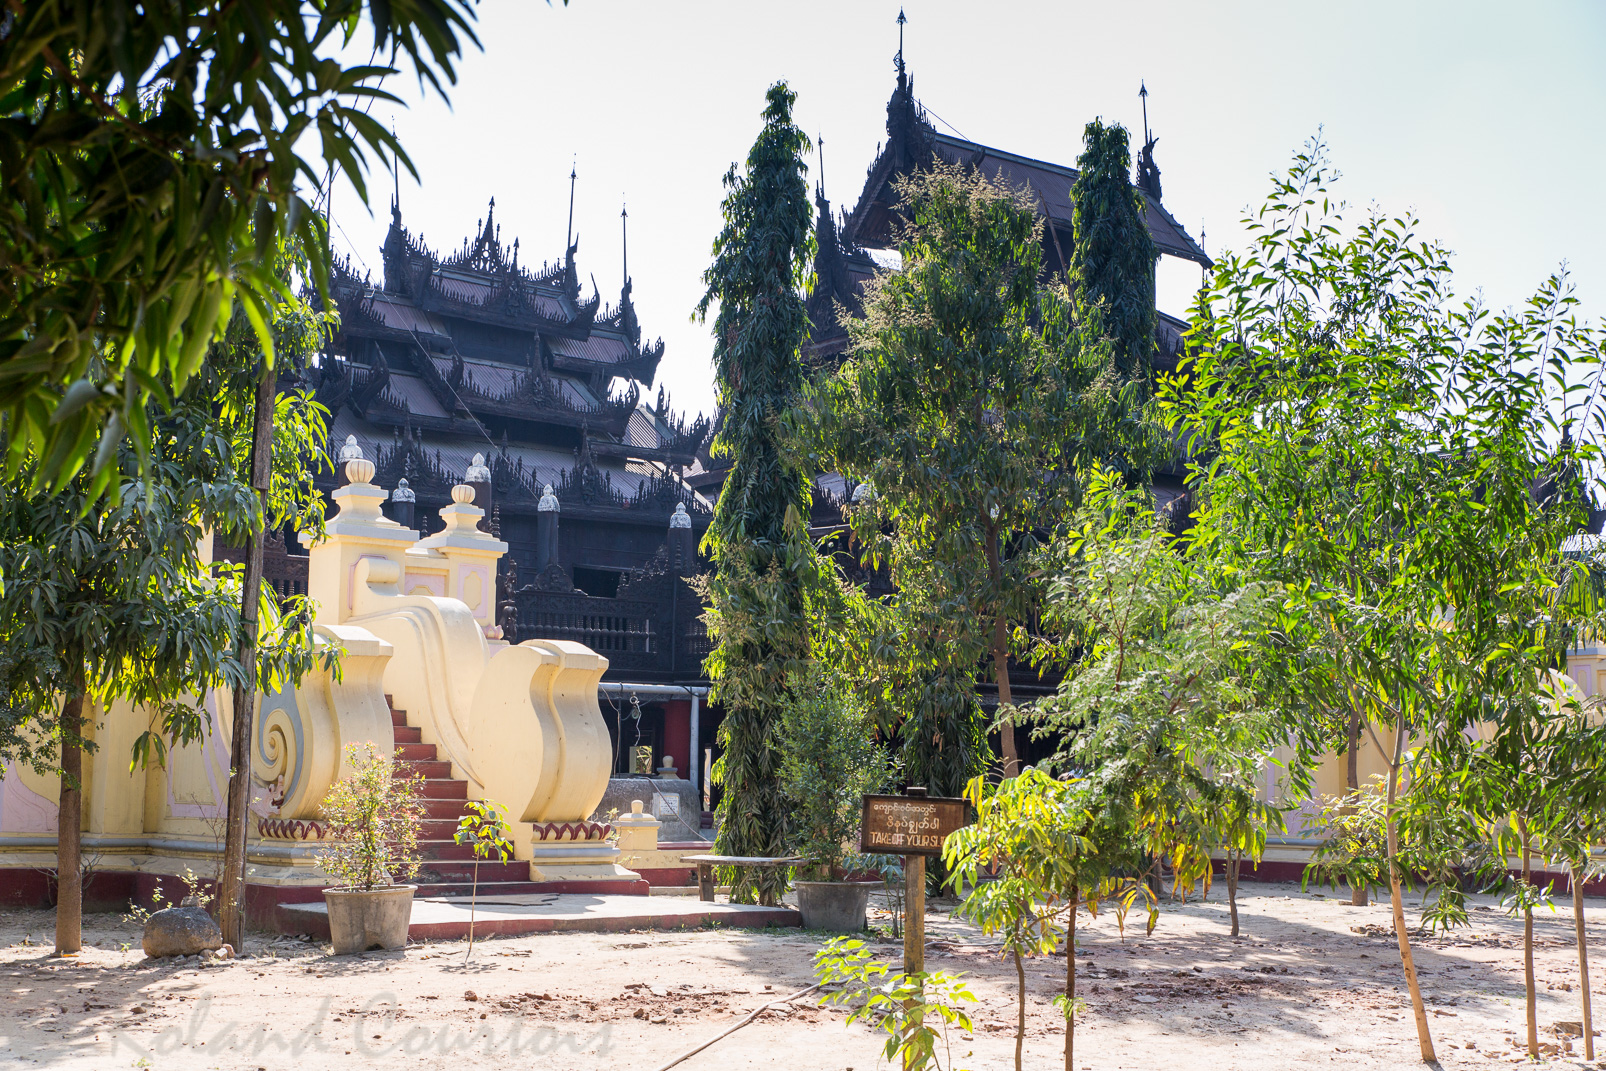 Le monastère Shwe Inbin  (1895) est un remarquable exemple de la sculpture traditionnelle sur bois de Mandalay.